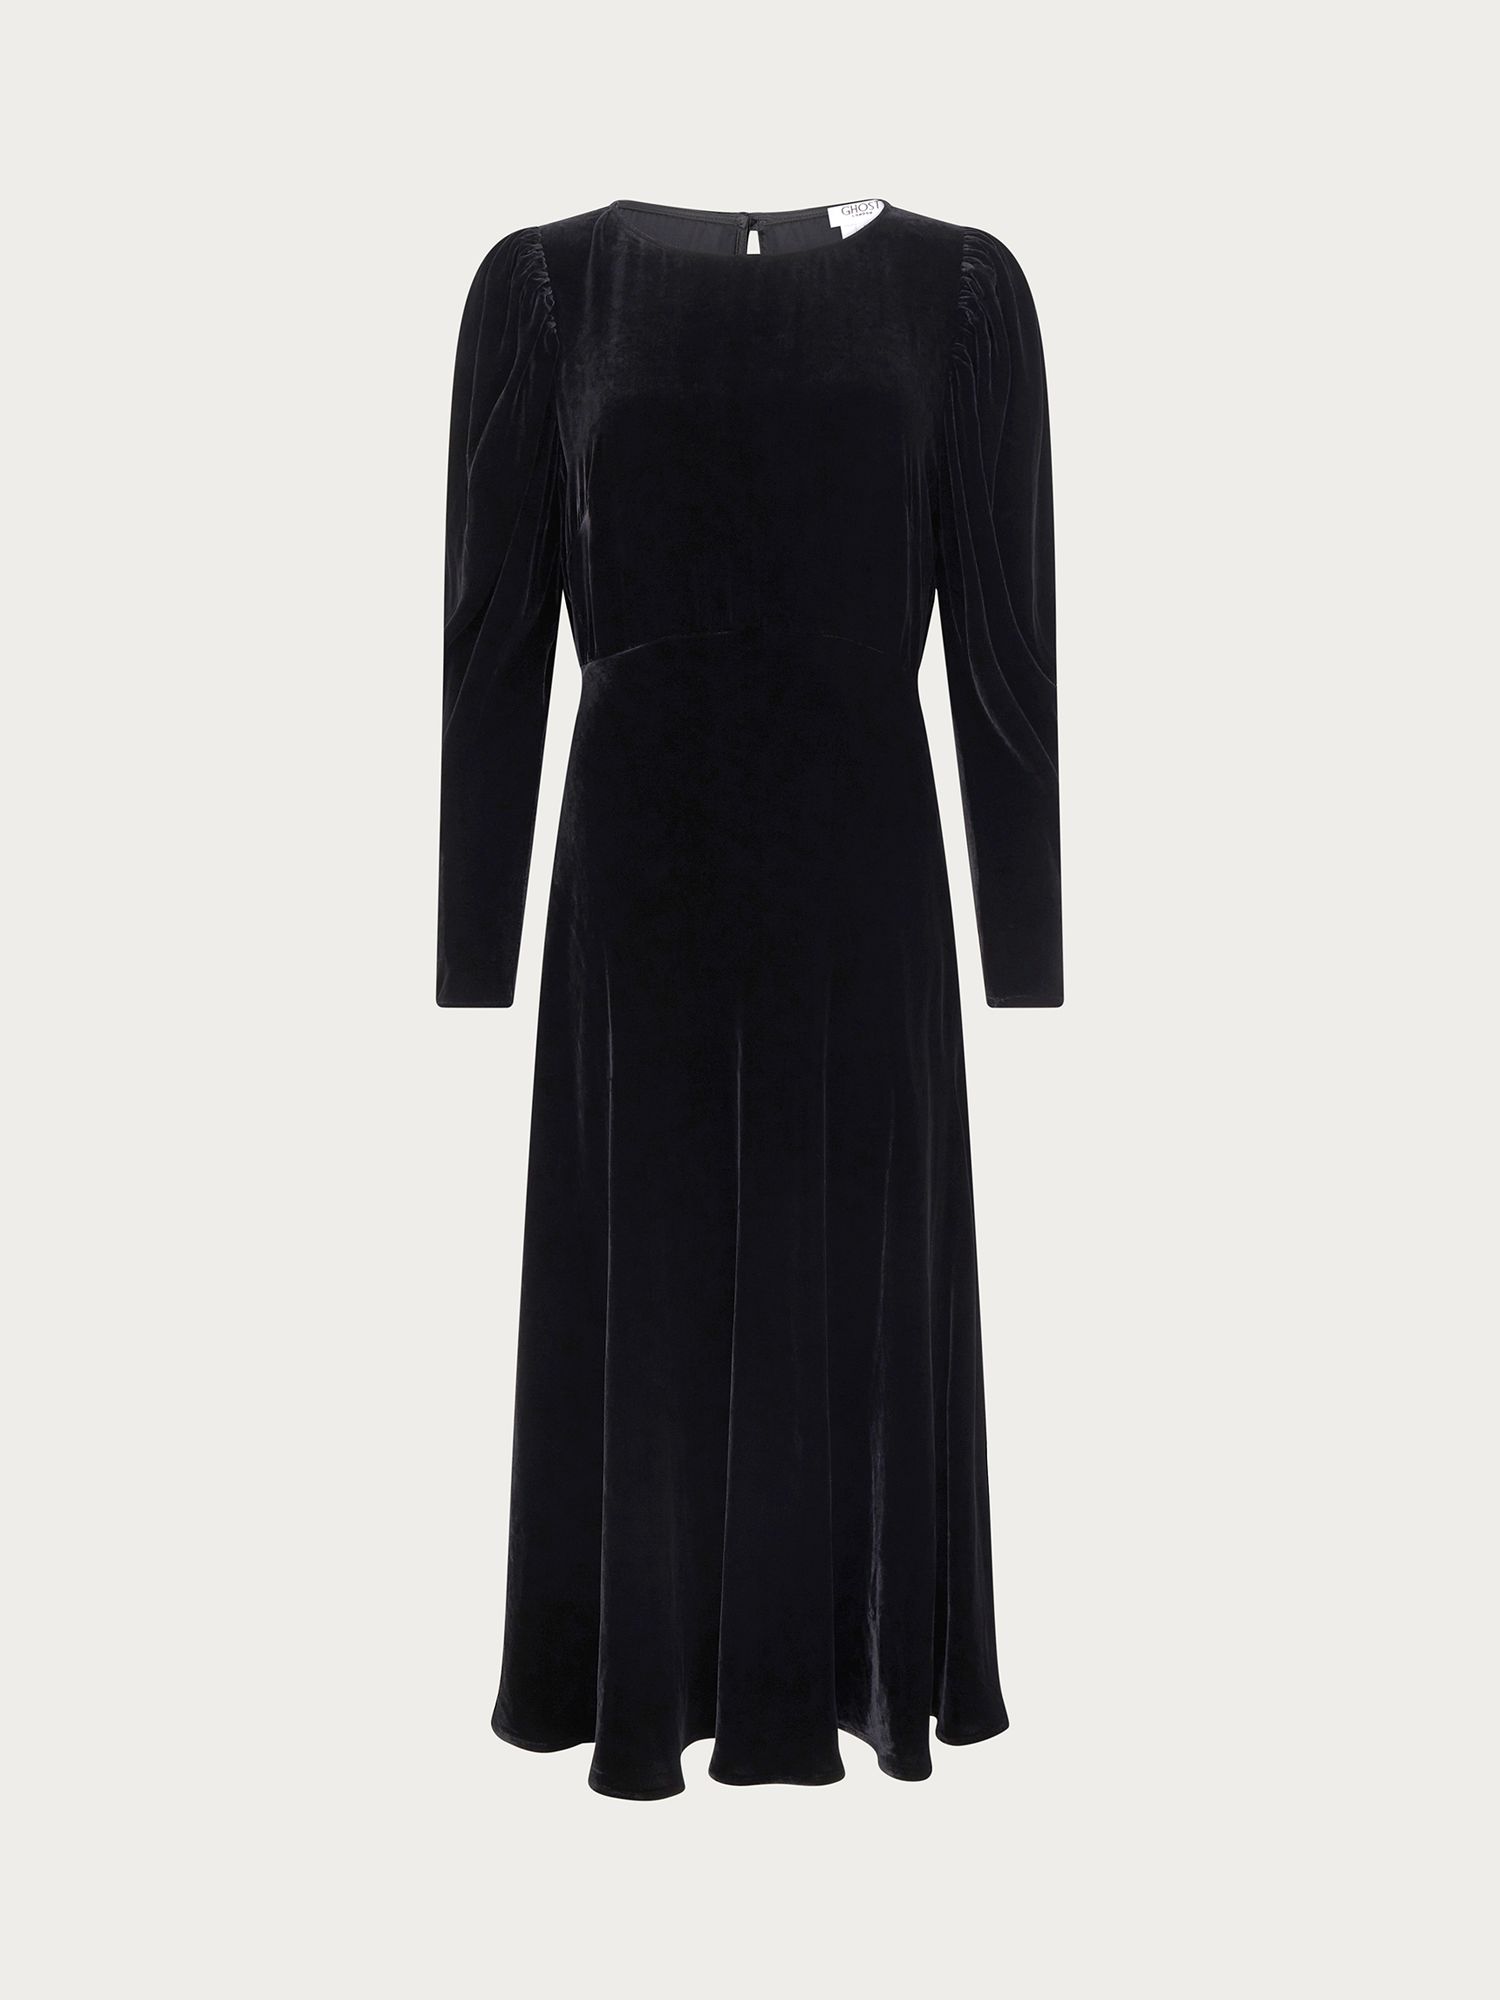 Ghost Rosaleen Velvet Dress, Black at John Lewis & Partners